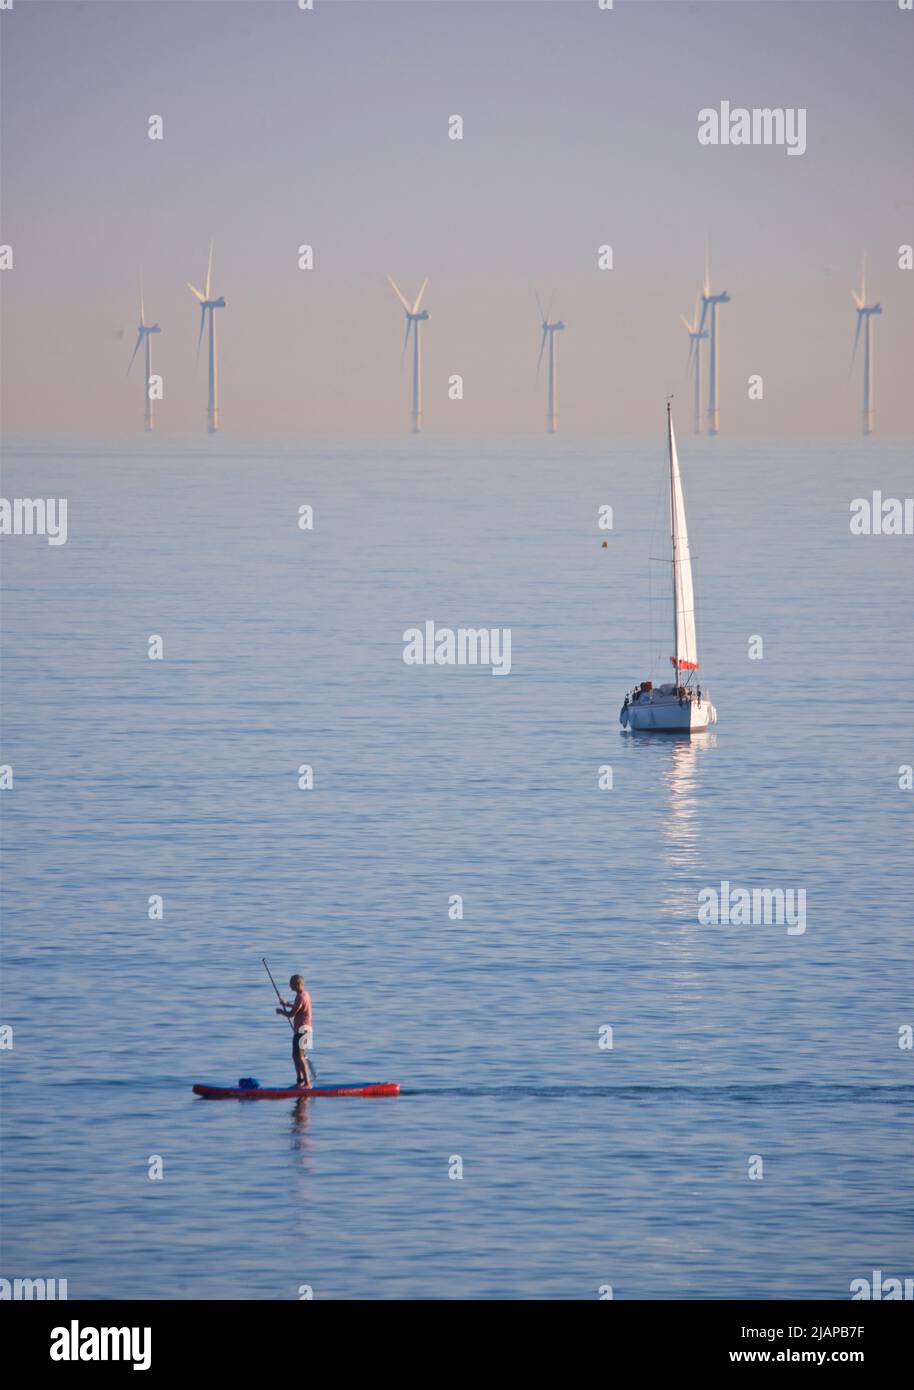 Turbines du parc éolien offshore de Rampion situé au large de la côte de Sussex, Angleterre, Royaume-Uni. Mise en service et production d'énergie renouvelable en 2018, la construction du parc d'éoliennes de 116 a coûté £1,3 000. Yacht au milieu du sol; paddleboarder au premier plan. Banque D'Images